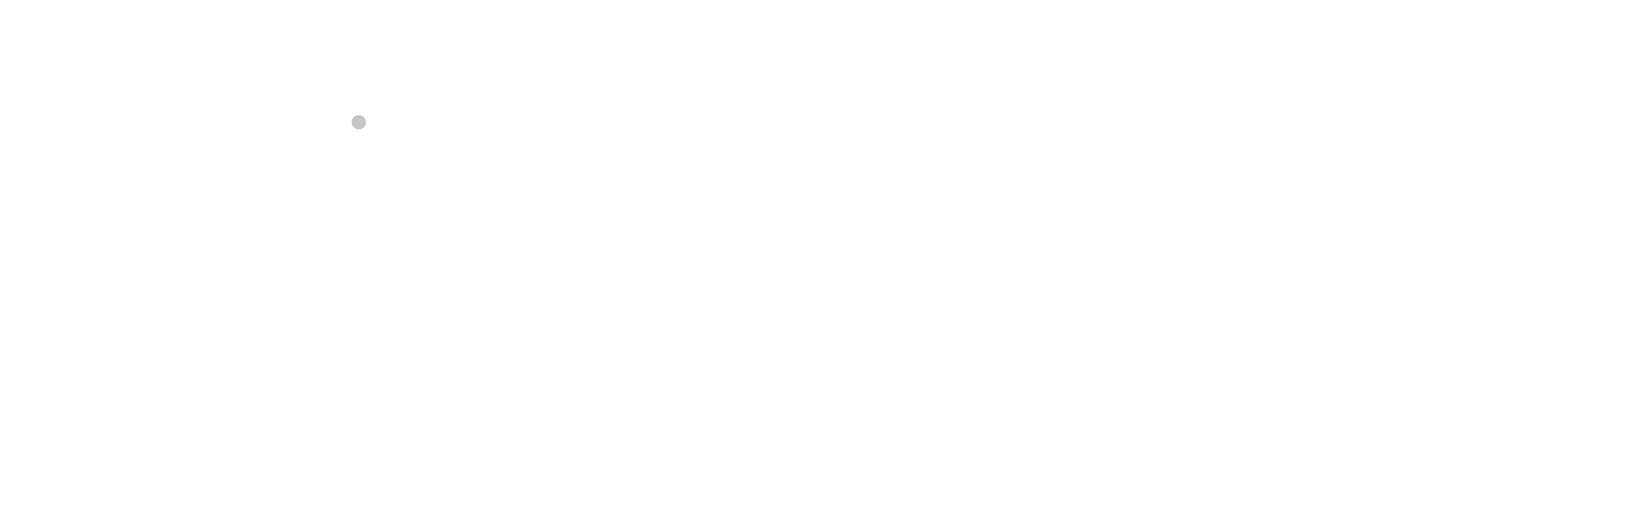 Suomen Metsästäjäliitto